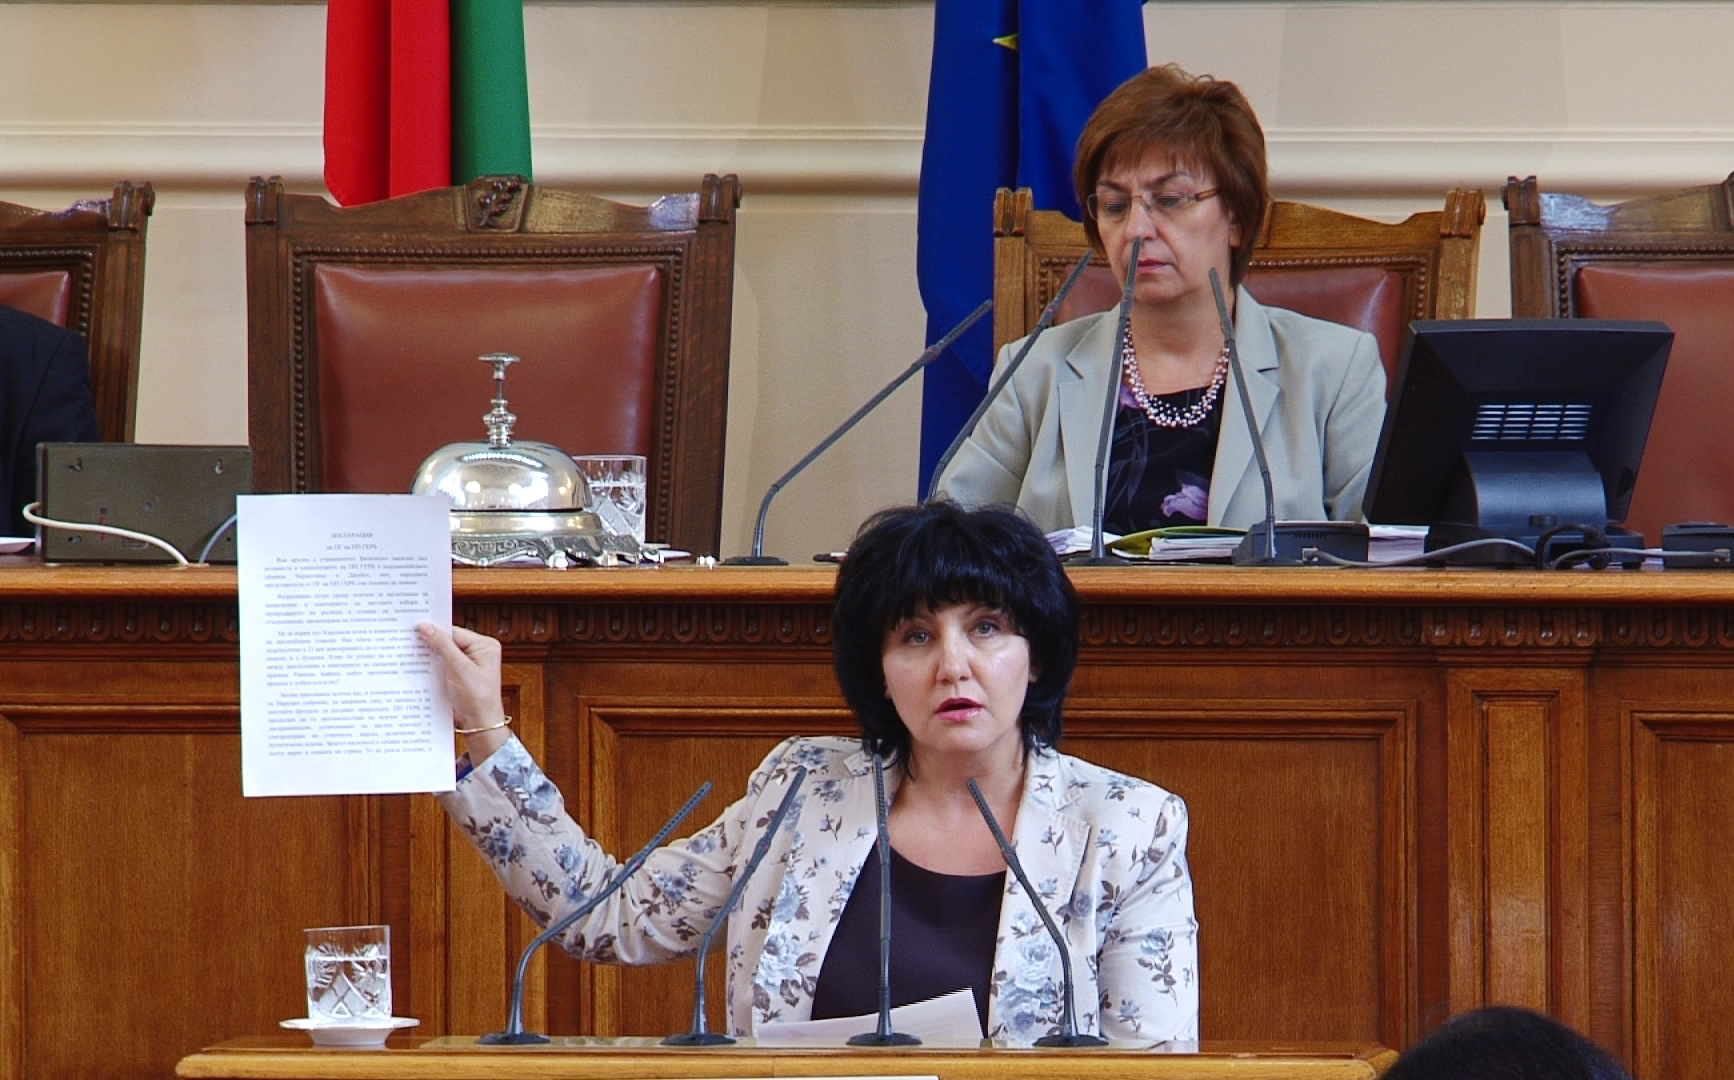 Цвета Караянчева: Няма как да заглушите гласа на опозицията, освен ако не вкарате полиция с палки